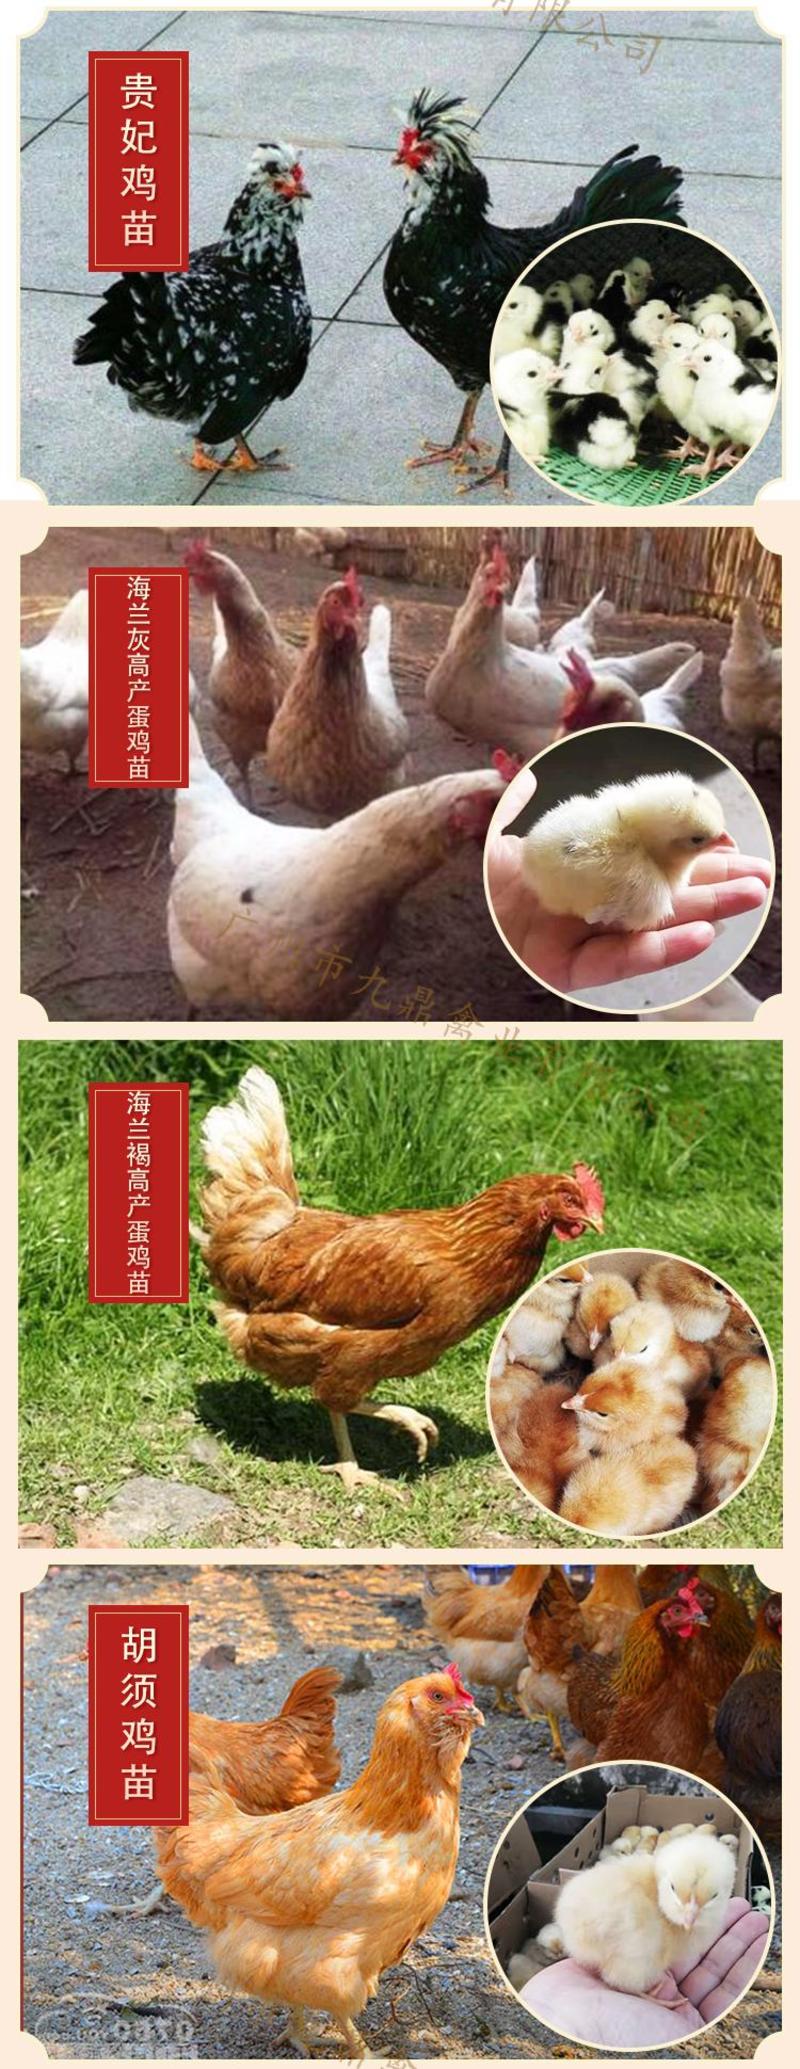 广州孵化场直售海兰灰蛋鸡苗海兰褐蛋鸡苗包做疫苗运损包赔